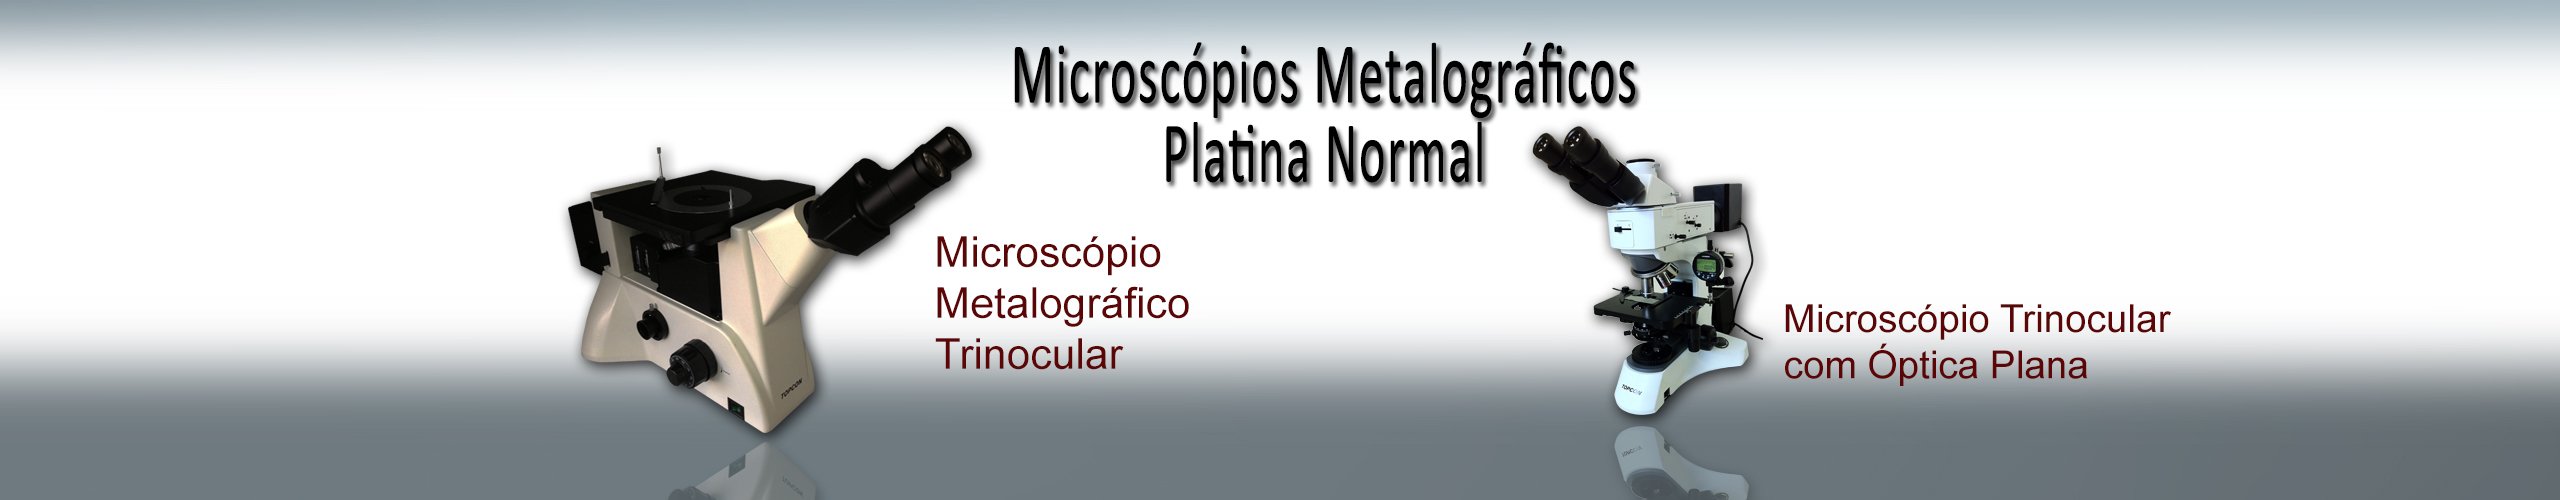 microscópio platina normal modelo 02